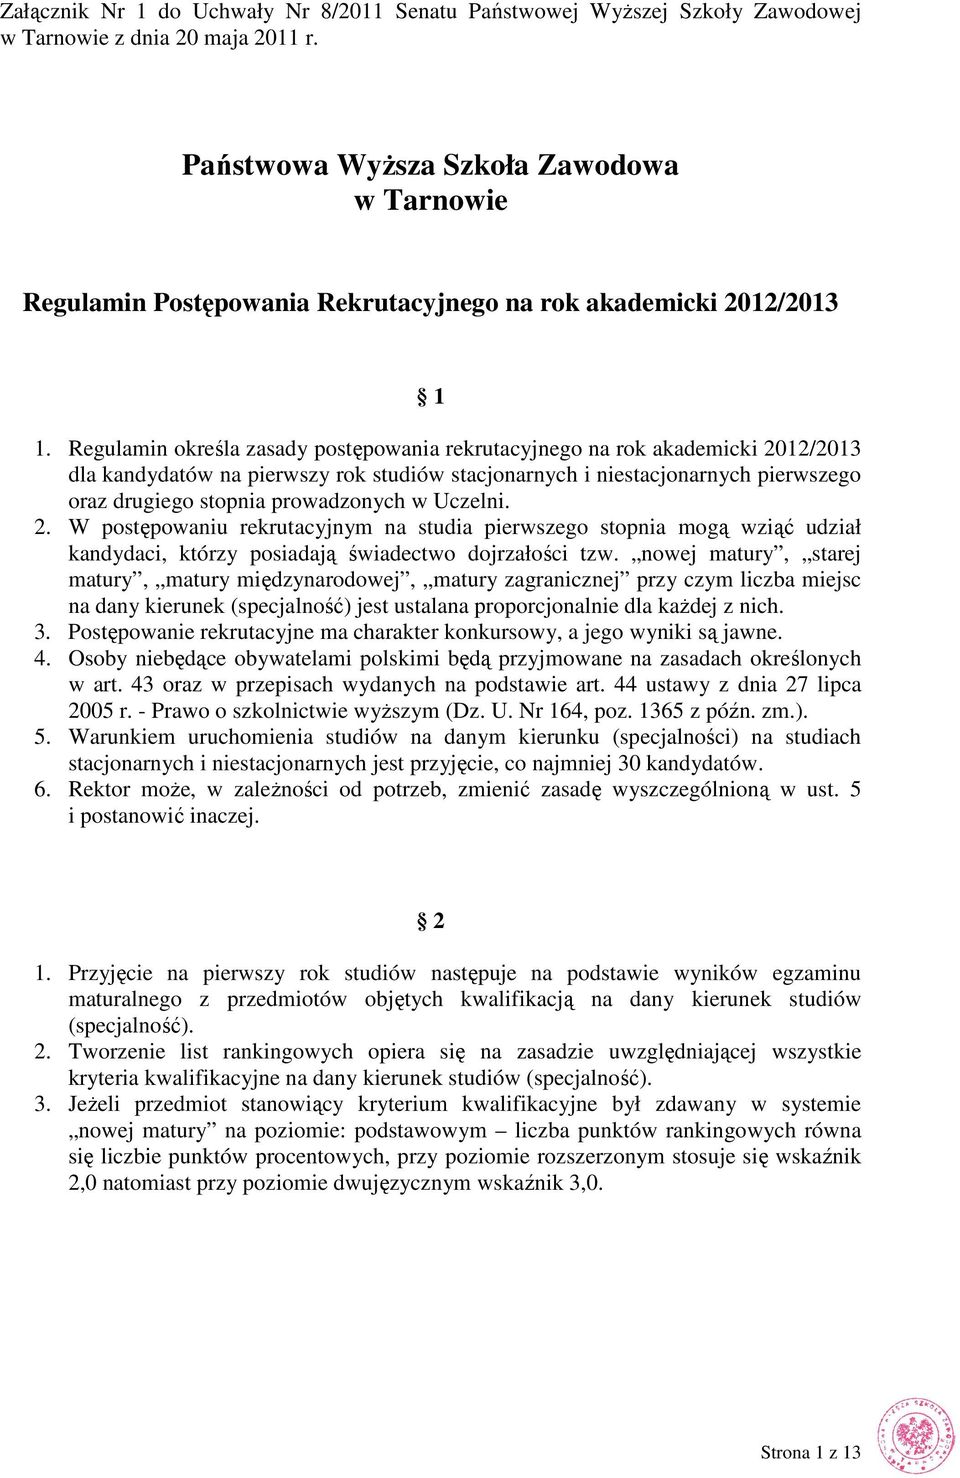 Regulamin określa zasady postępowania rekrutacyjnego na rok akademicki 2012/2013 dla kandydatów na pierwszy rok studiów stacjonarnych i niestacjonarnych pierwszego oraz drugiego stopnia prowadzonych